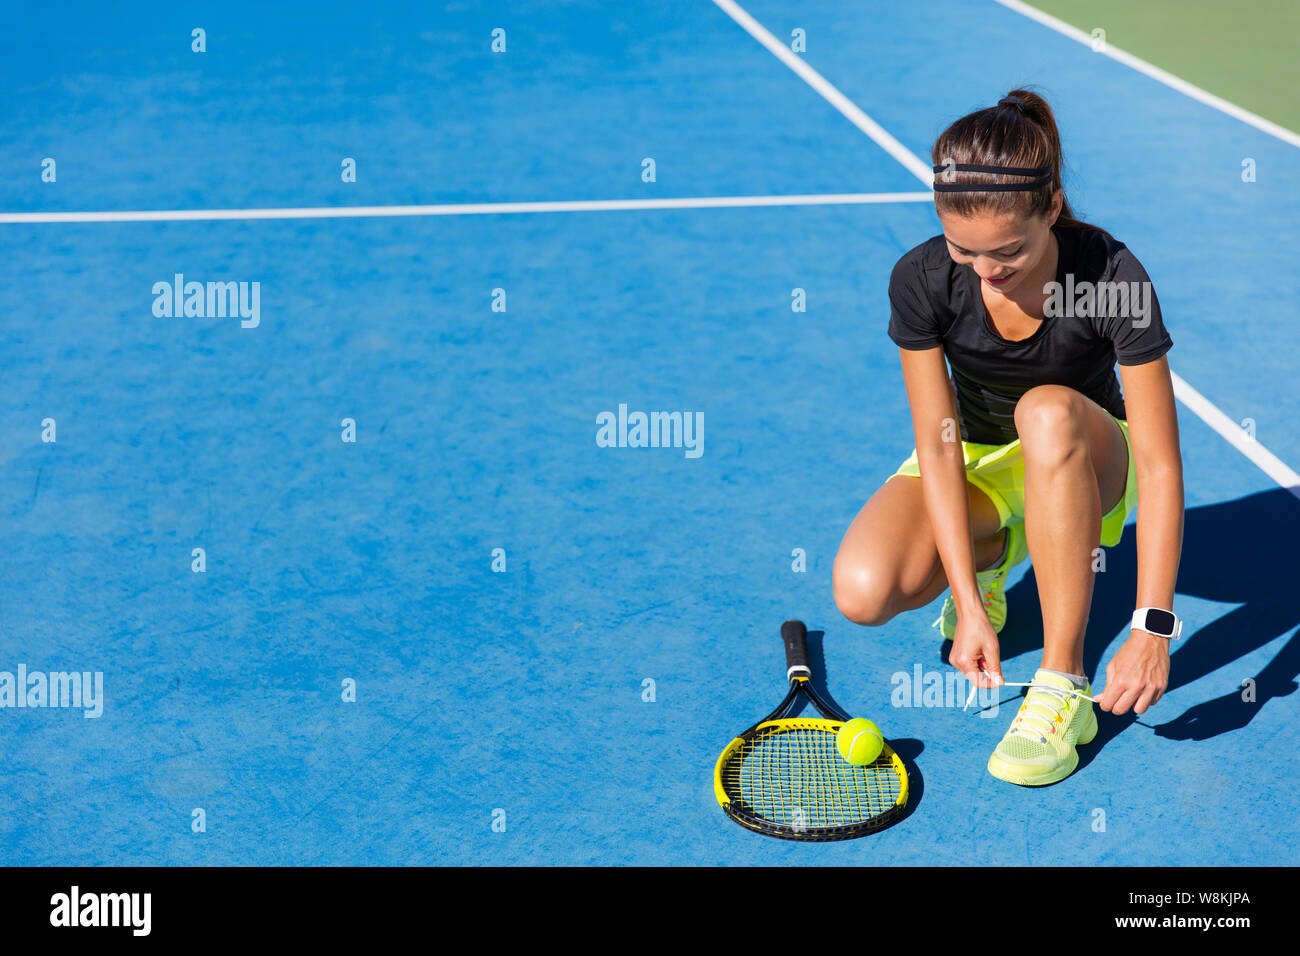 Deportes mujer asiática atleta feliz preparándose para jugar a tenis atar los cordones de sus zapatos para correr en la piscina azul de corte duro. Jugador profesional, la preparación para el torneo de verano. Foto de stock